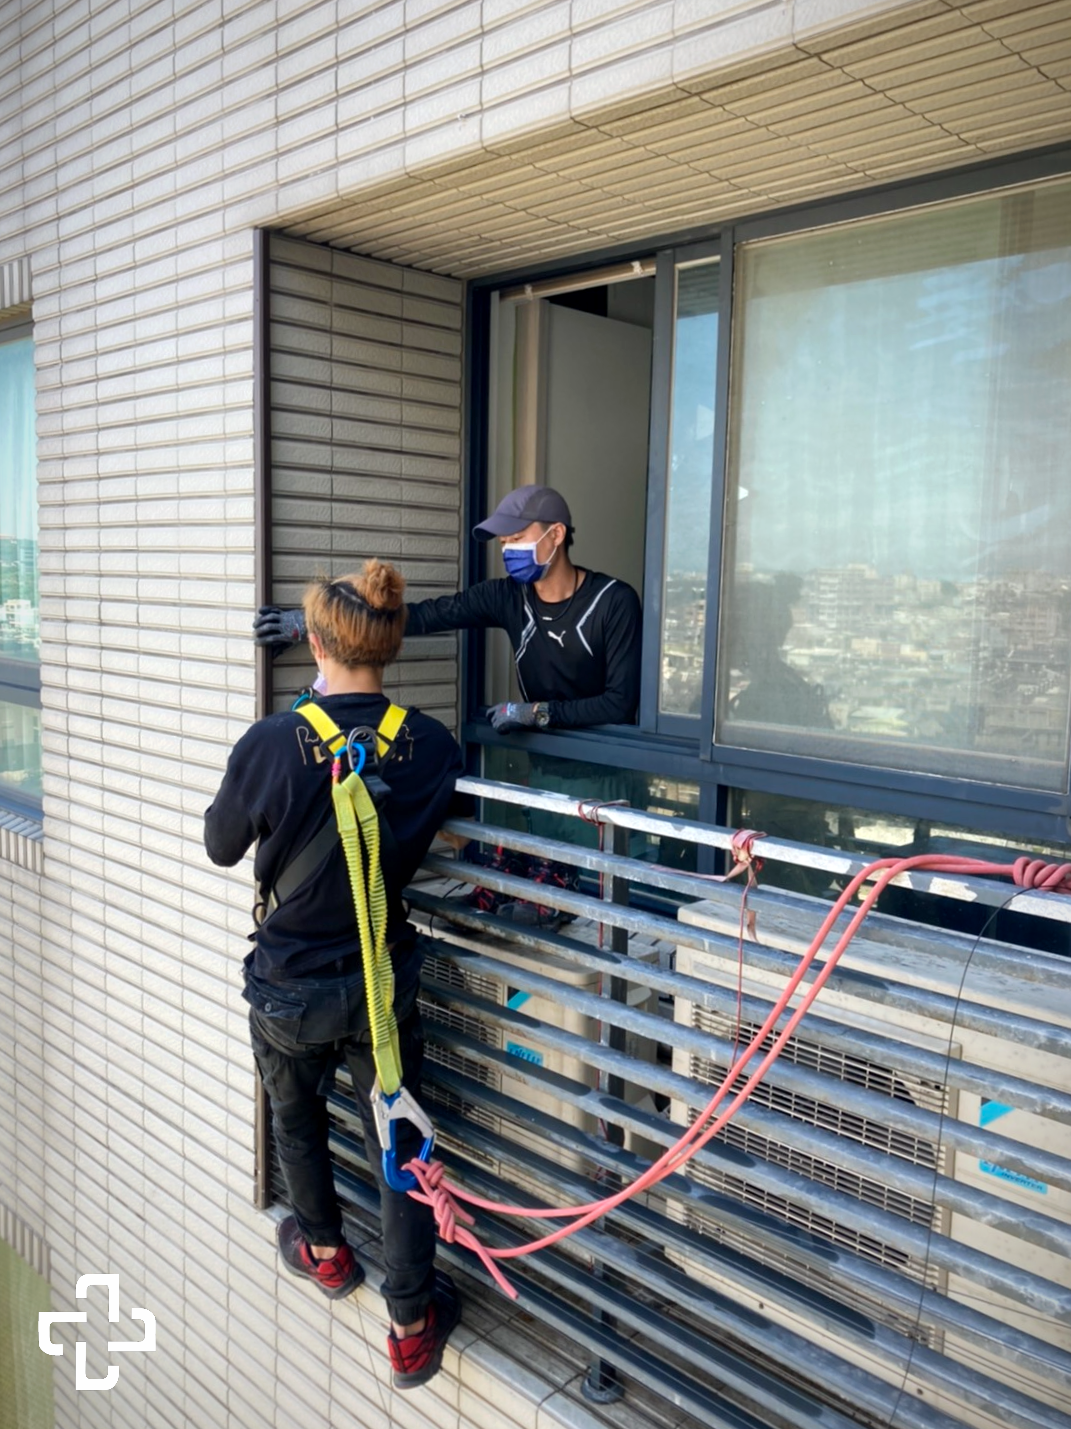 沒有相對應的安全措施就爬出大樓窗外是非常危險的是，不管是安裝防霾紗窗或隱形鐵窗都應注意工安問題